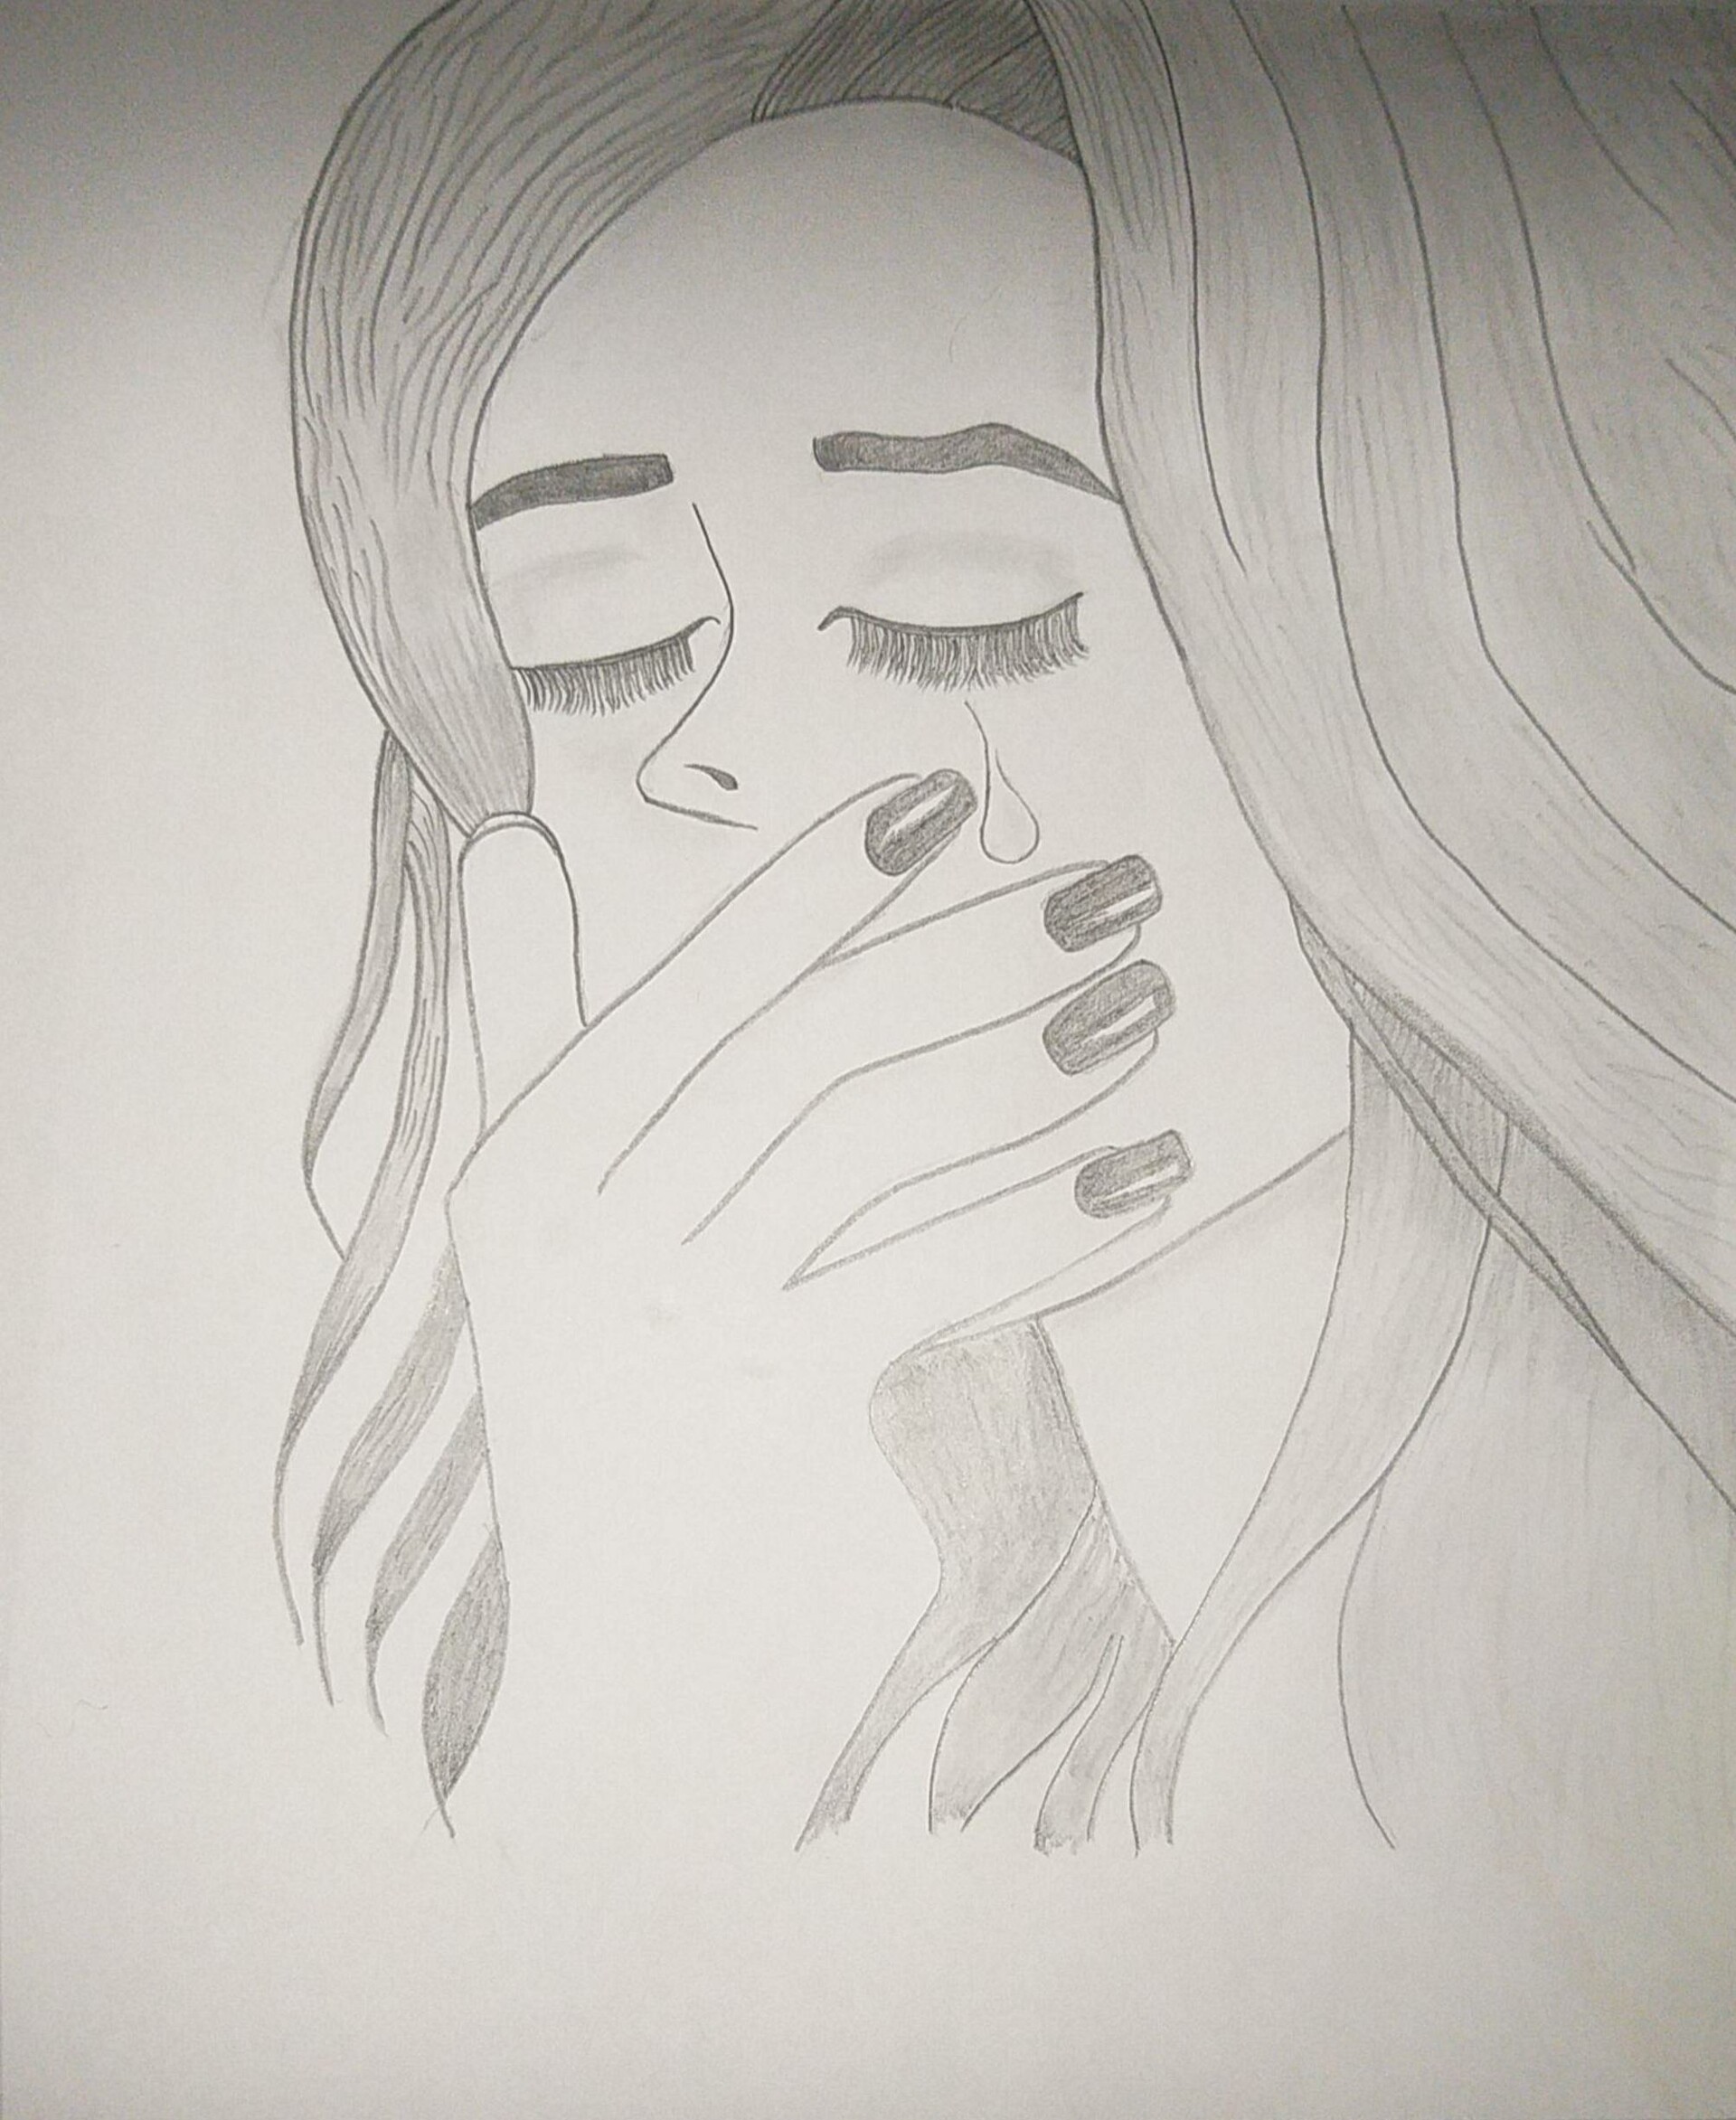 depressed girl sketch